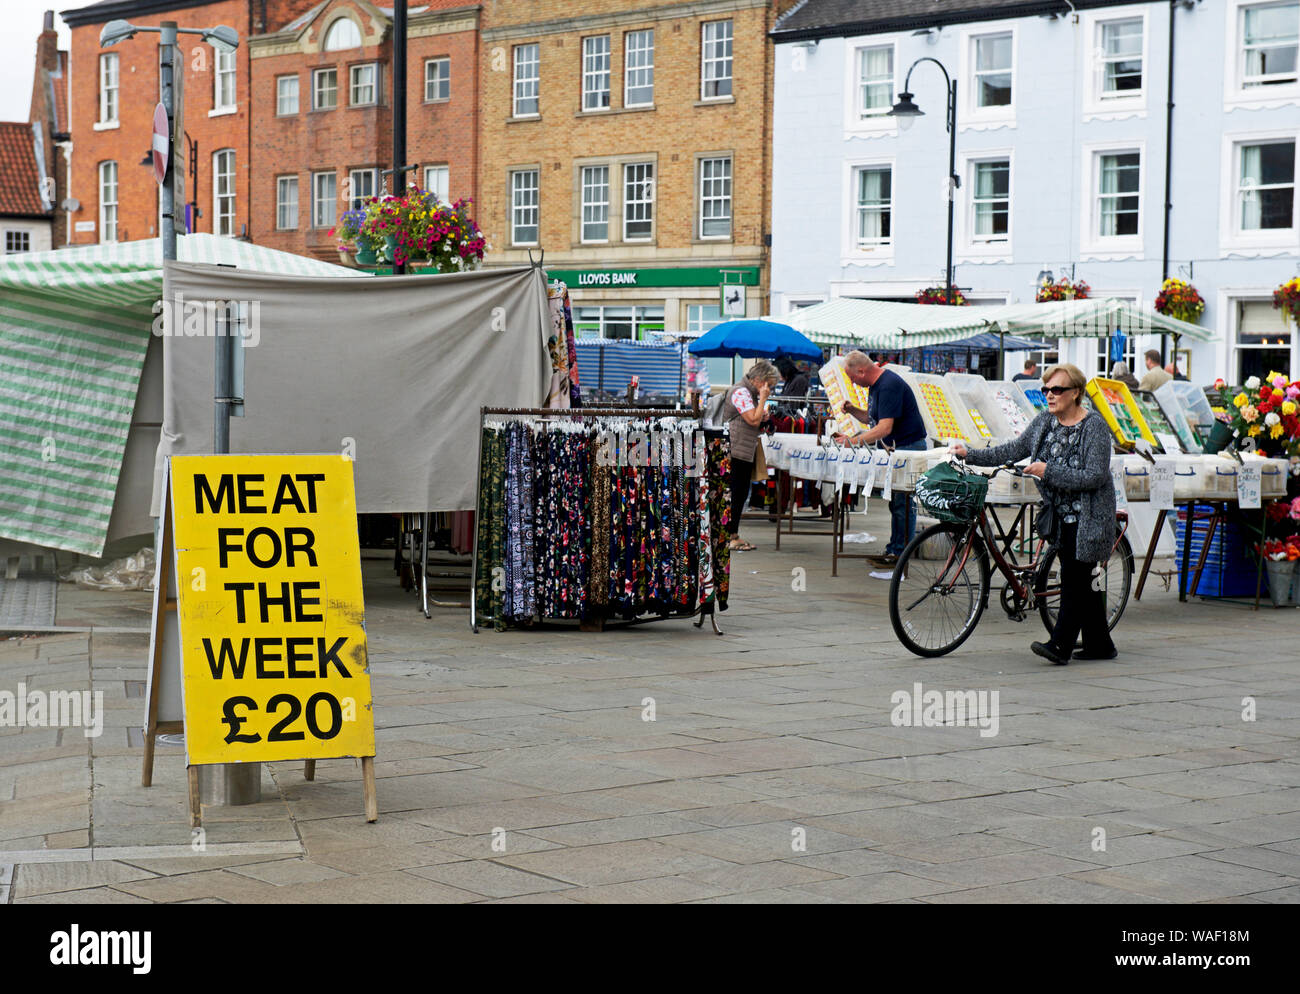 Anmelden - Fleisch für die Woche £ 20 - an Selby, North Yorkshire, England, Großbritannien Stockfoto